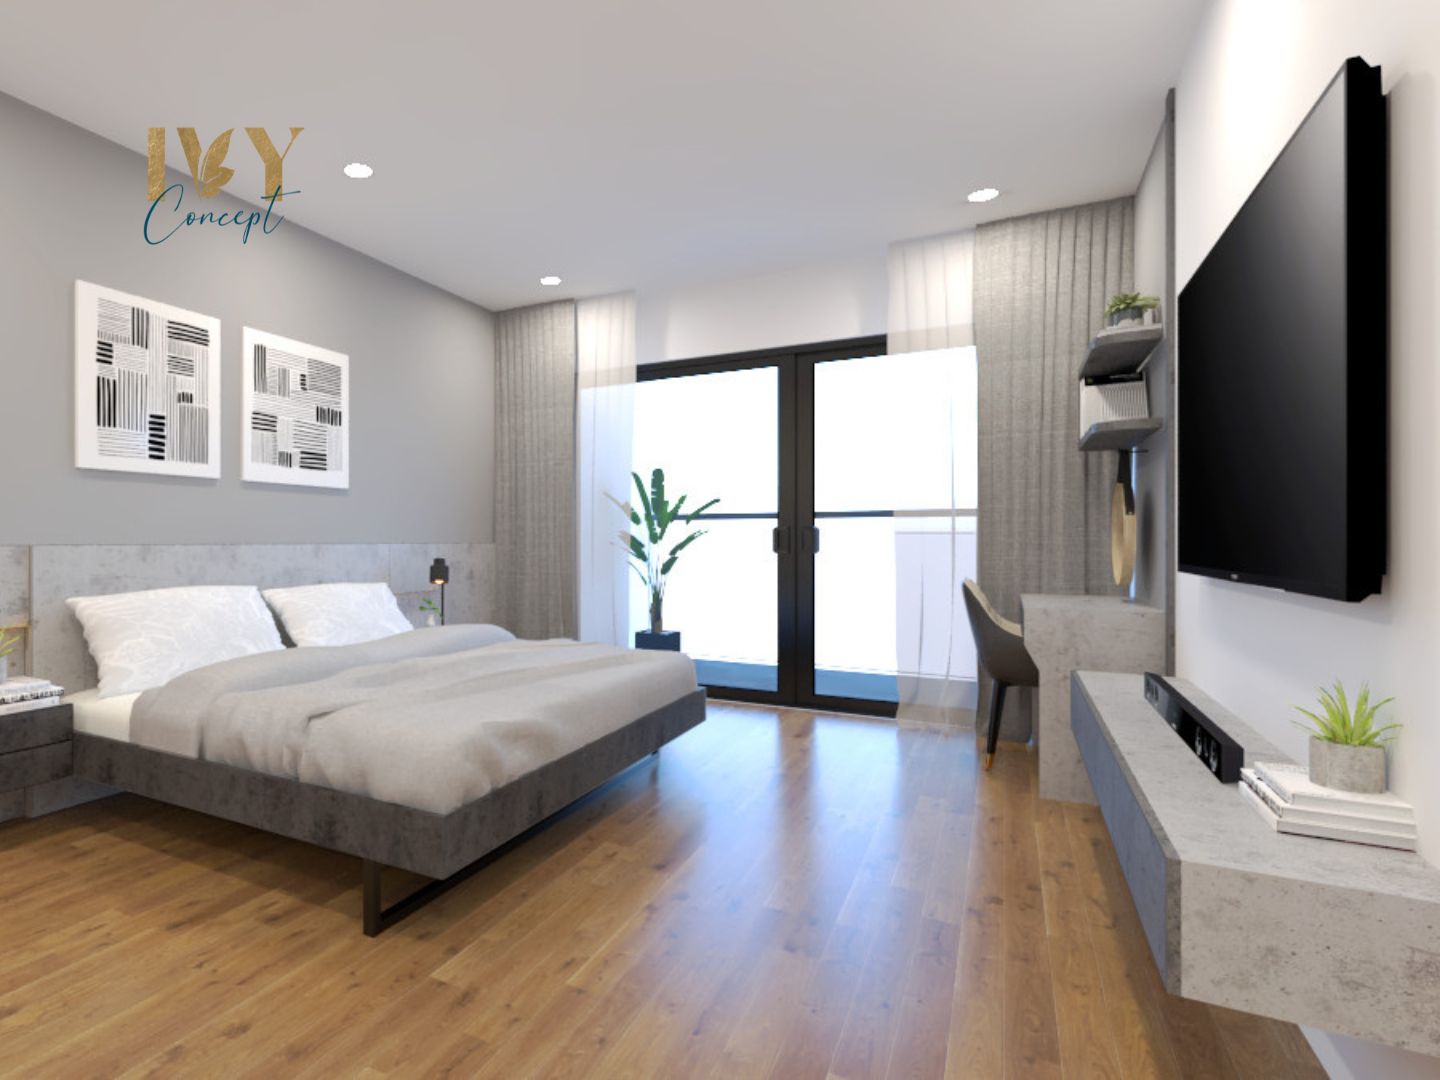 Phòng ngủ, phong cách Tối giản Minimalist, thiết kế concept nội thất, căn hộ PetroVietnam Landmark